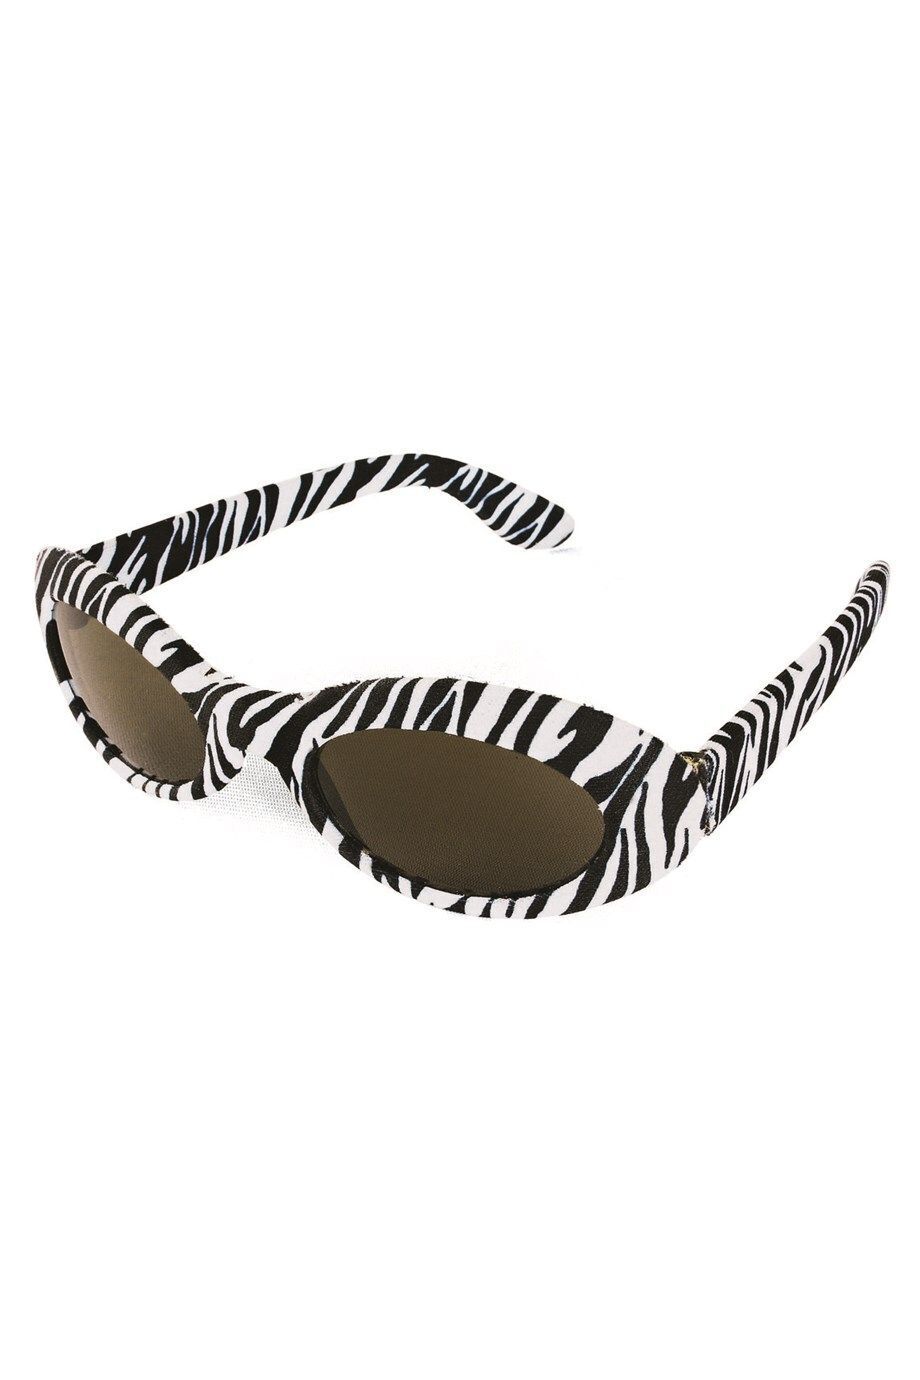 Accessoire: Brille Zebra 